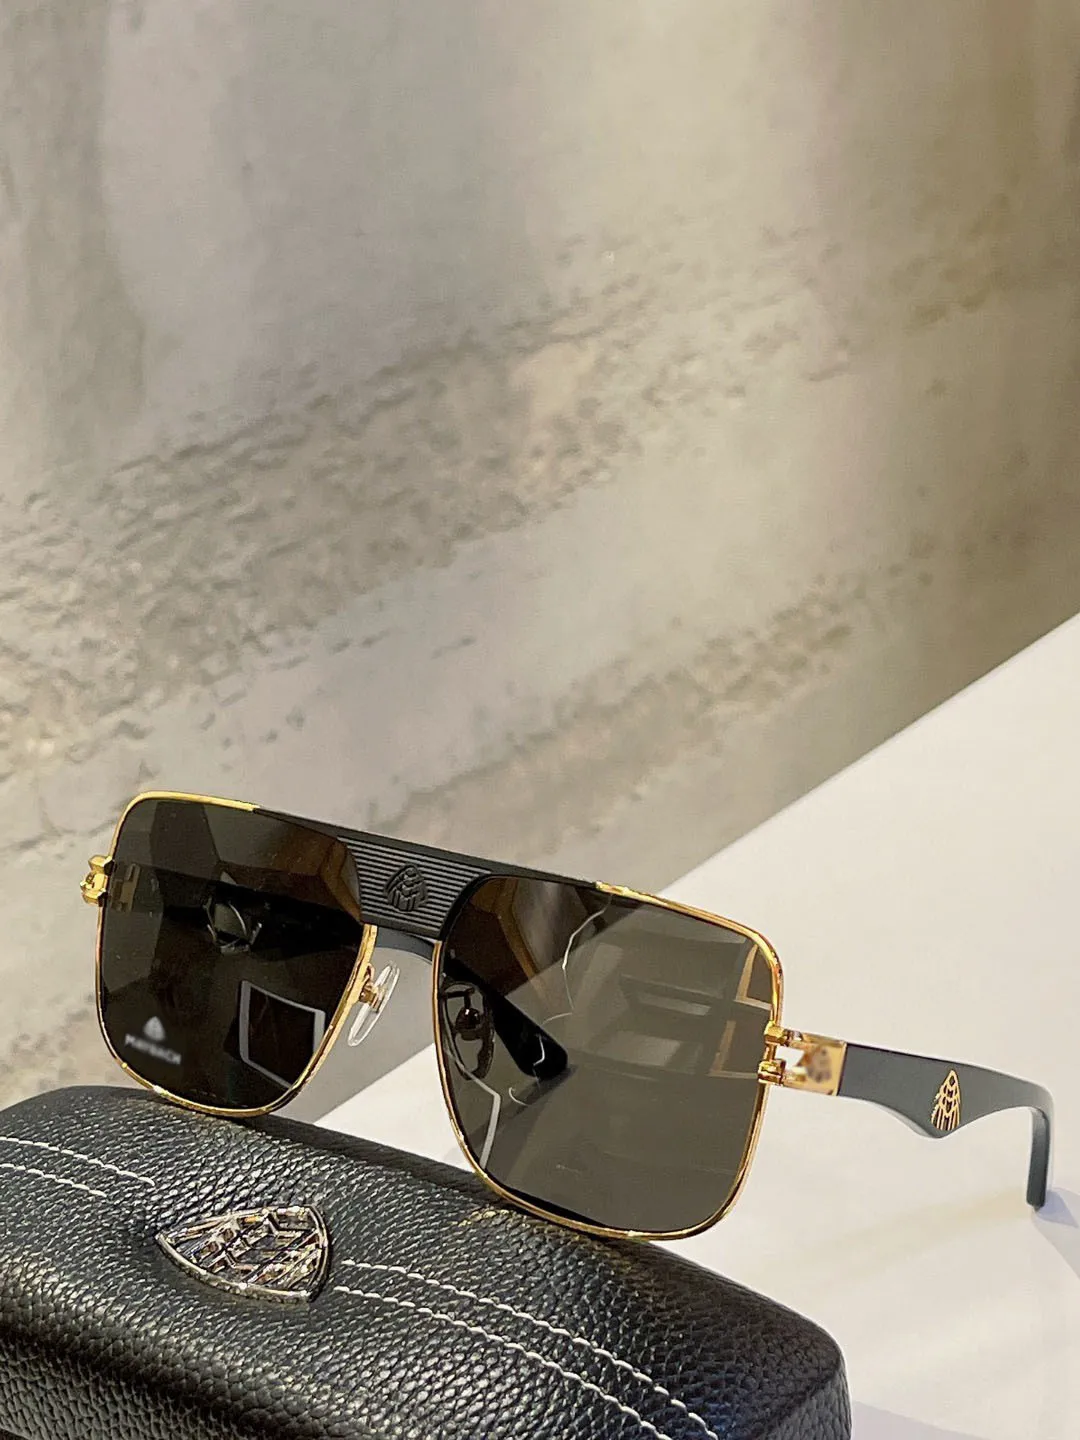 Mayba GPA-AB-Z35 Top Original hochwertiger Designer Sonnenbrille Herberühmte modische Retro Luxusmarke Brille Mode Desig241p